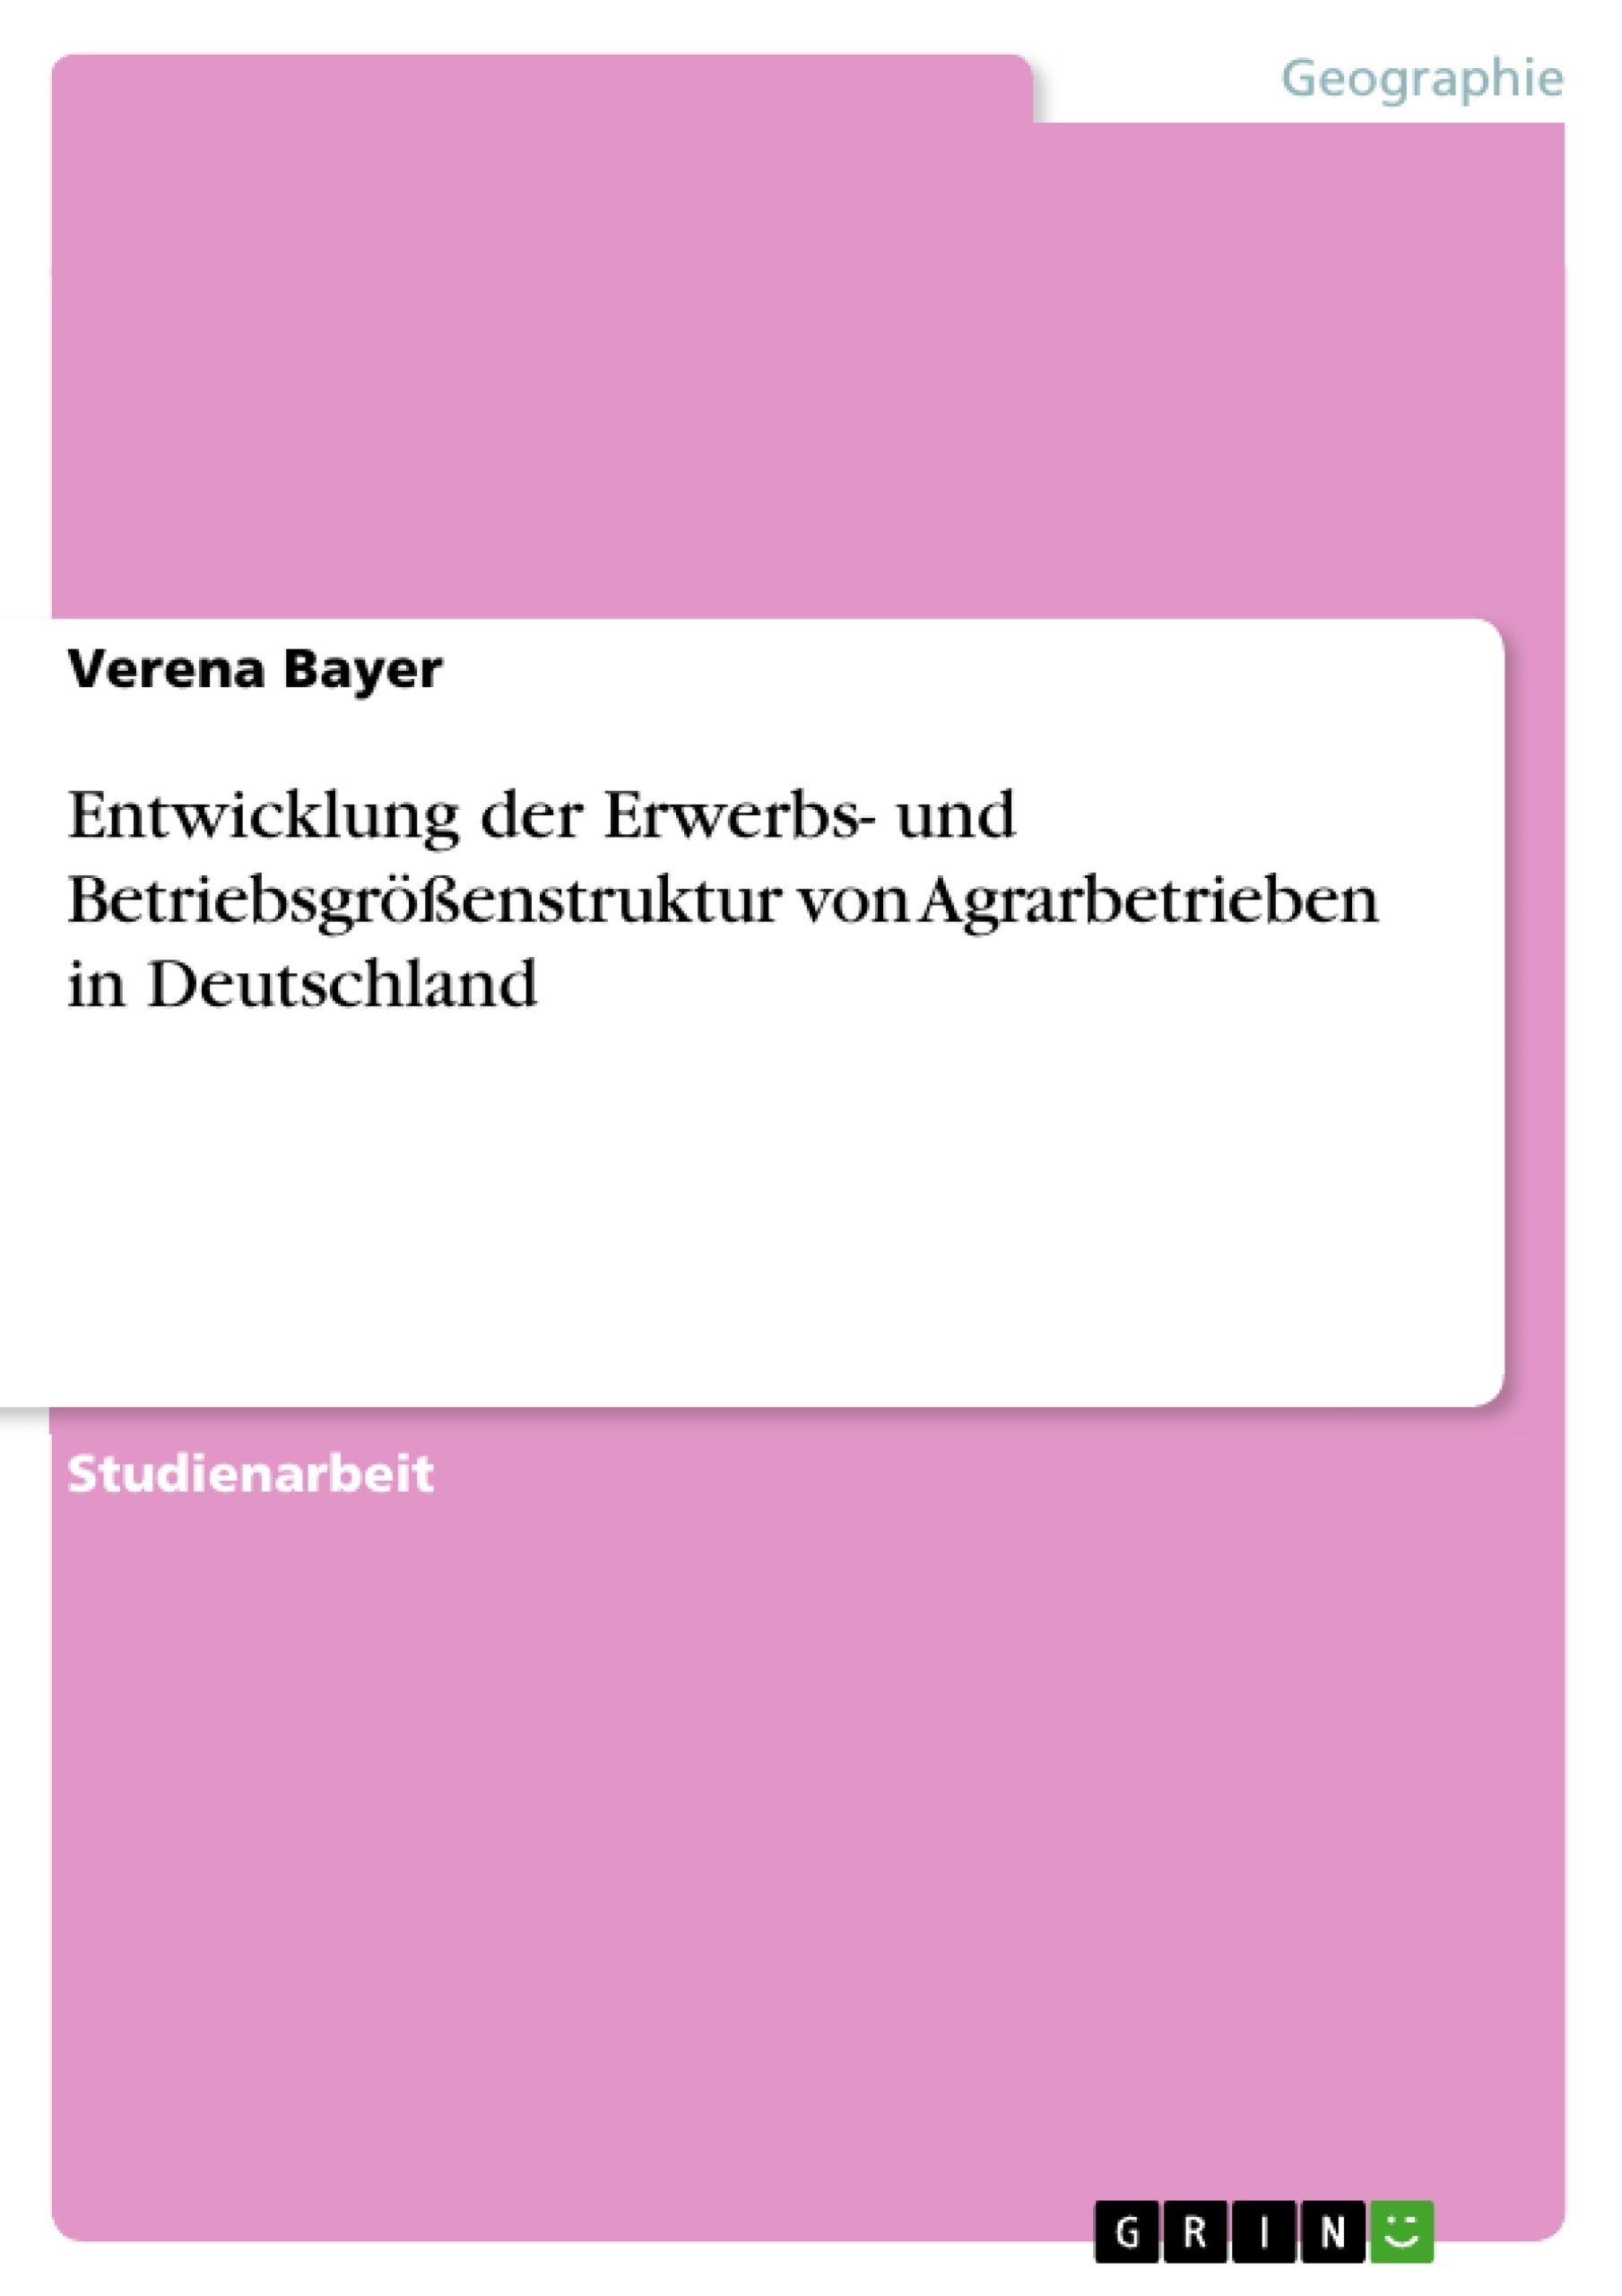 Título: Entwicklung der Erwerbs- und Betriebsgrößenstruktur von Agrarbetrieben in Deutschland